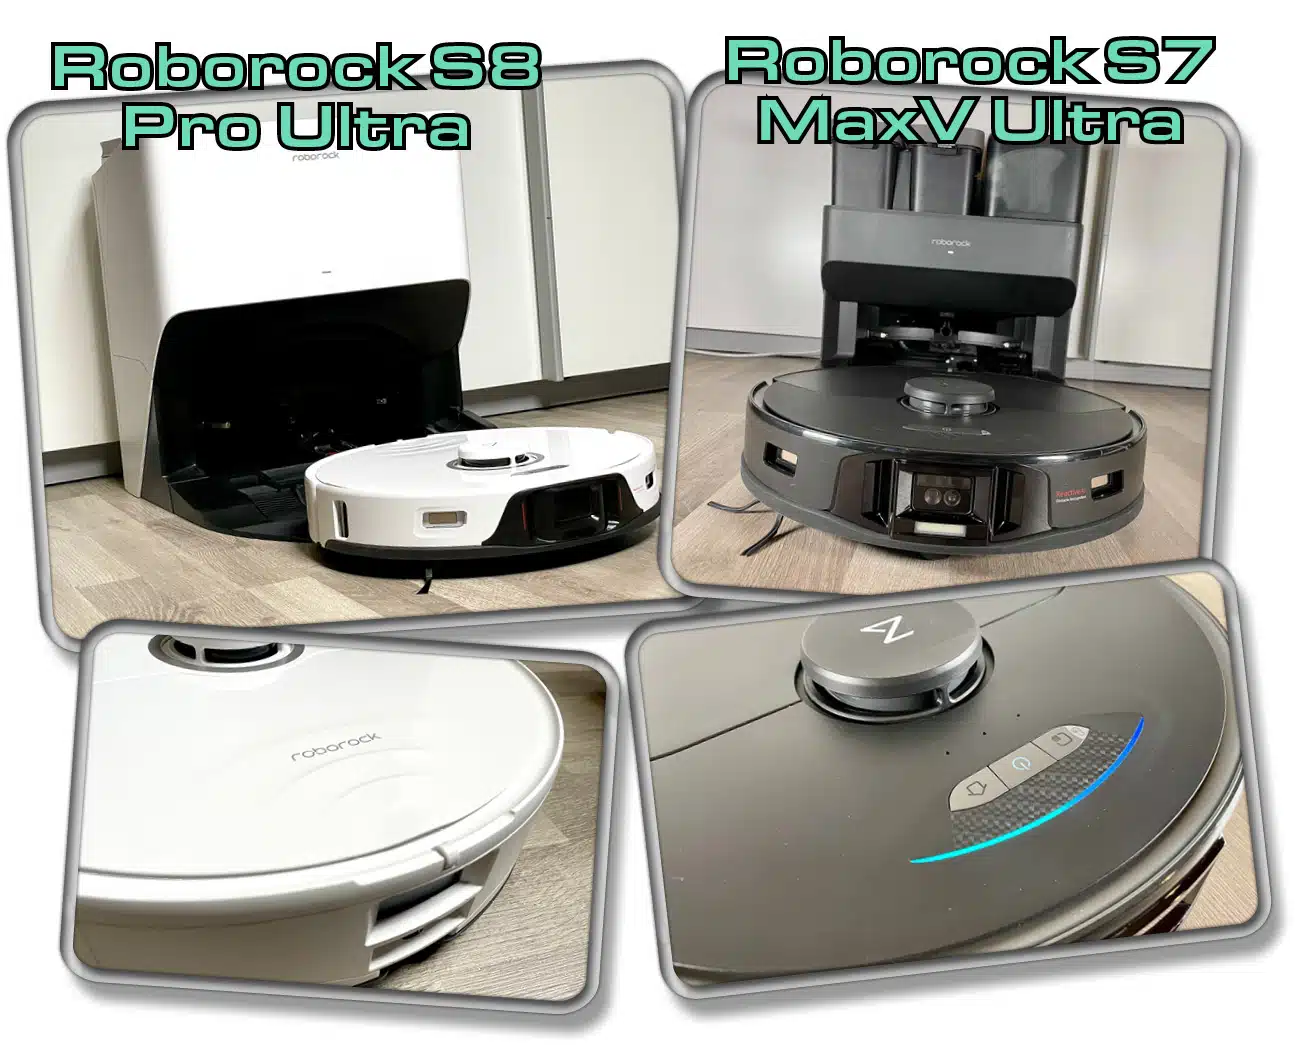 Roborock S8 Pro Ultra - Hier siehst du die Veränderung zum Vorgänger im direkten Vergleich